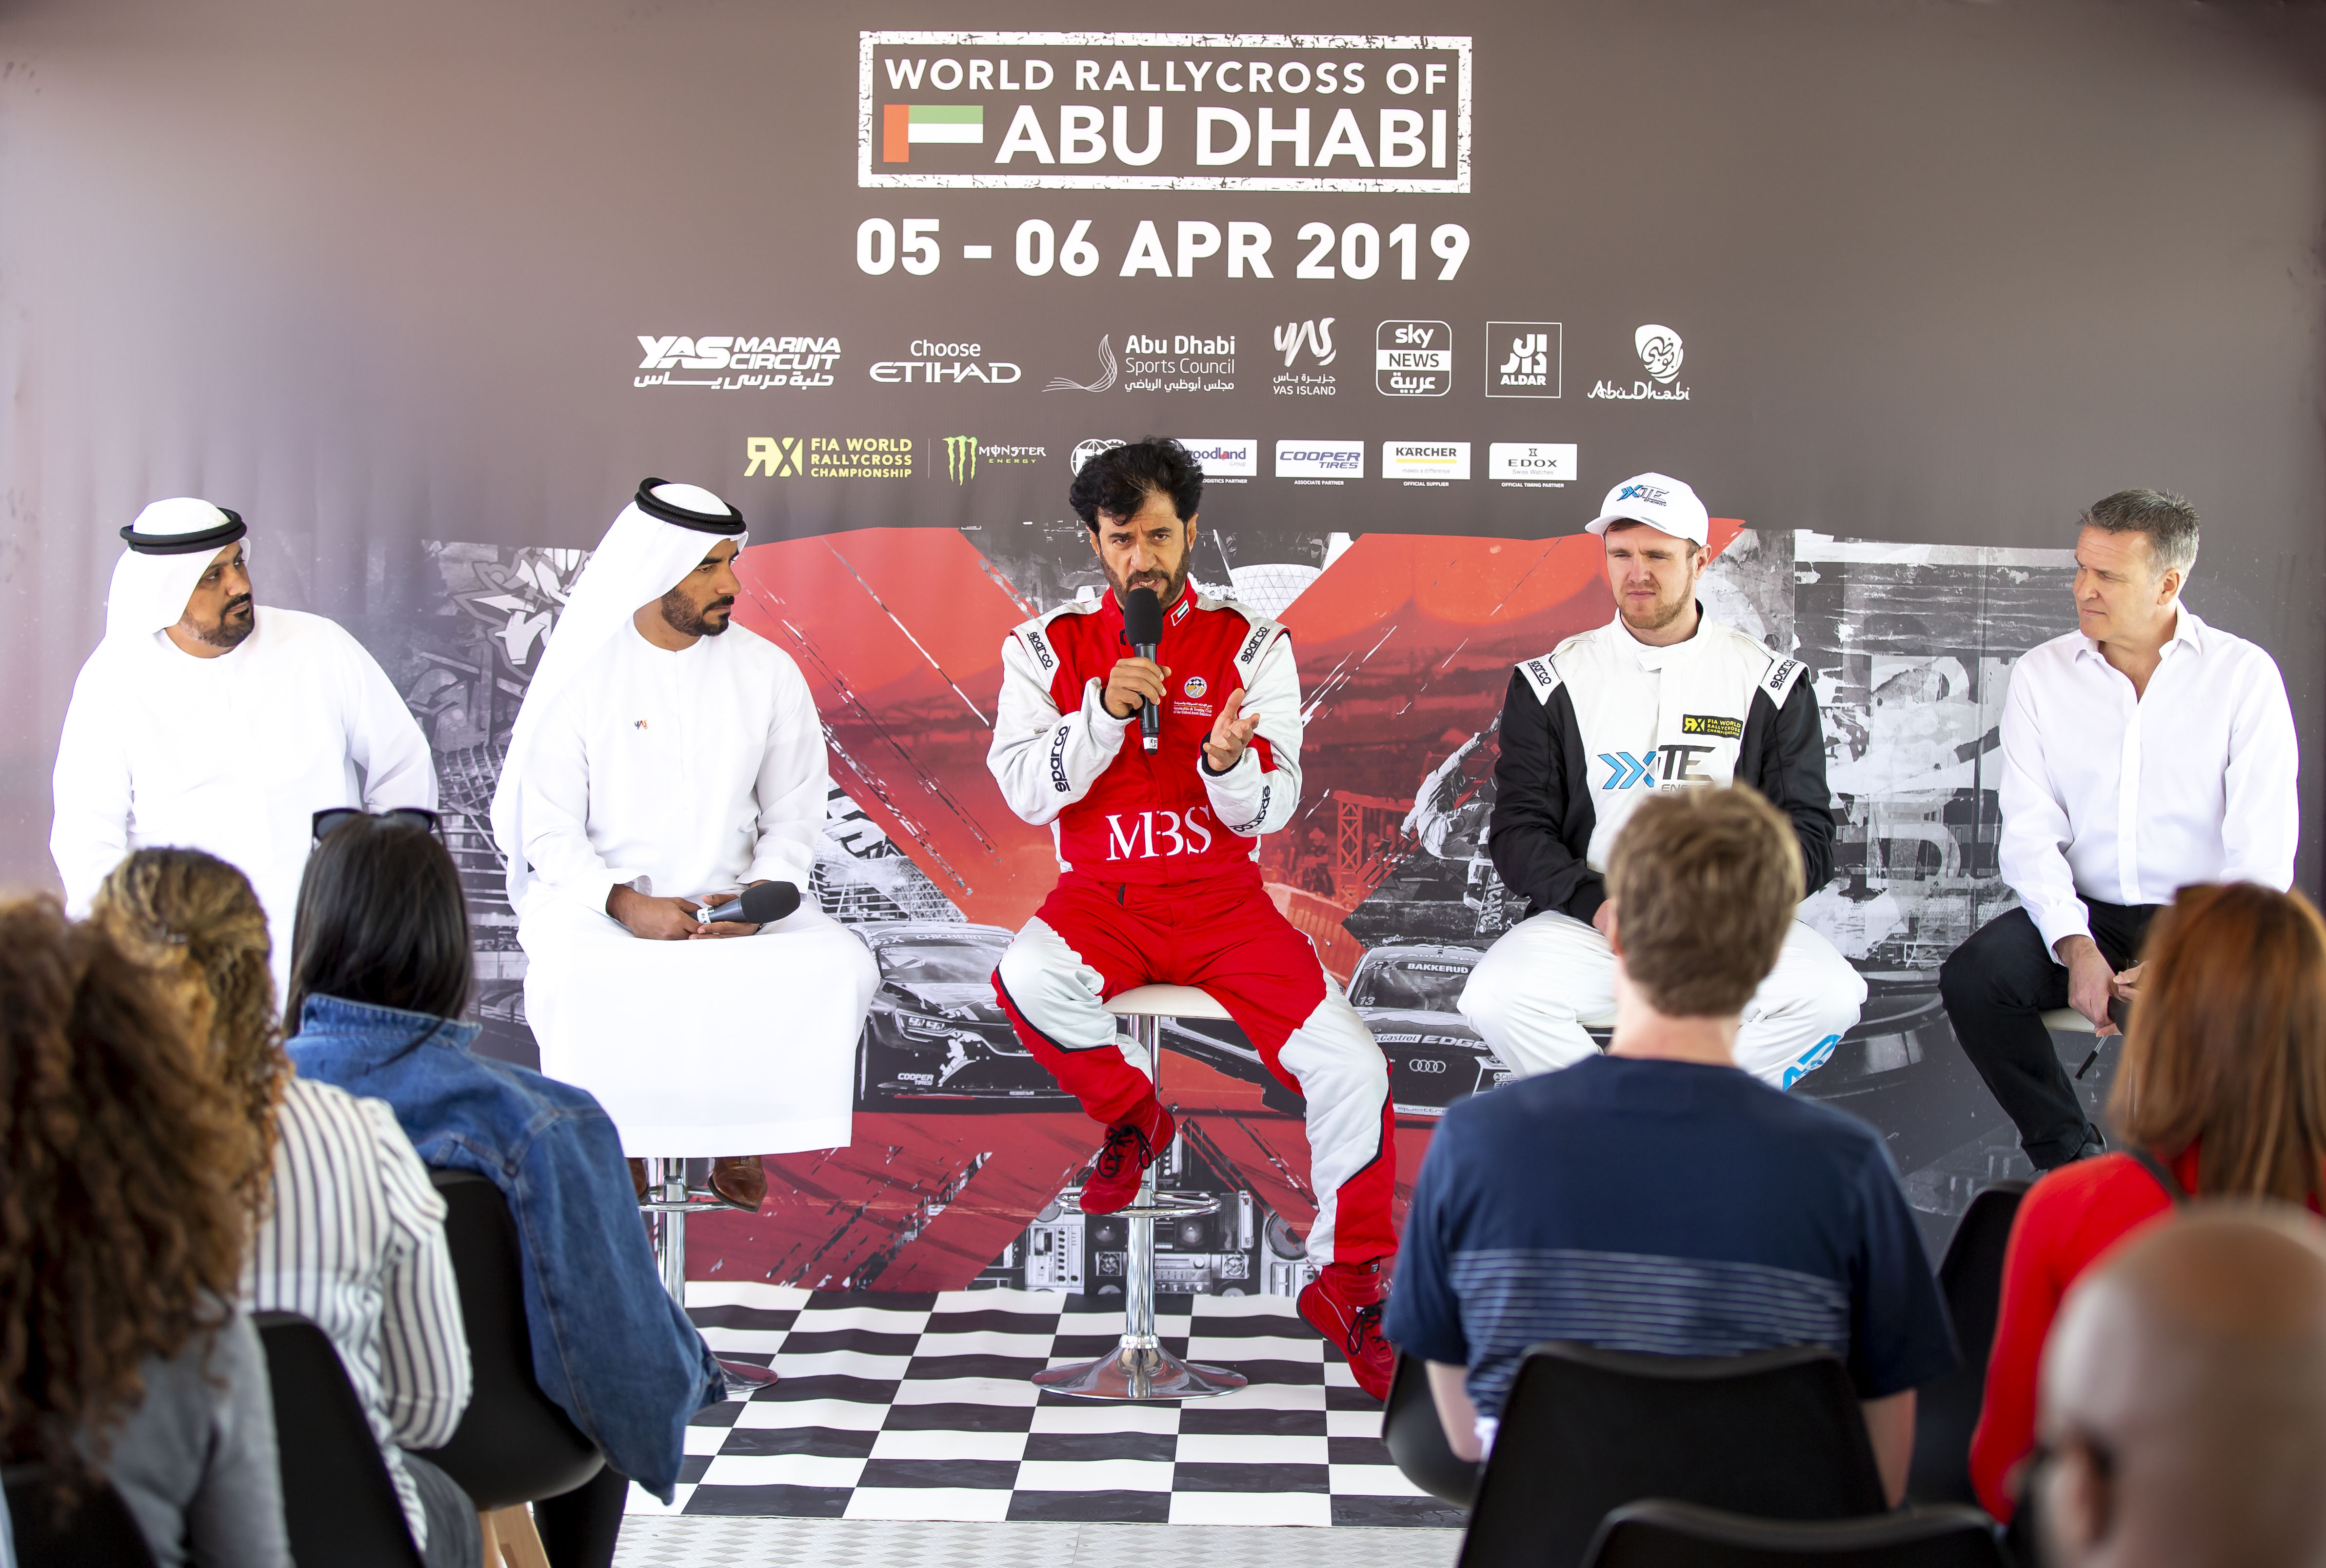 حلبة مرسى ياس تُقدم أنشطة وفعاليات لعطلة أسبوع سباق رالي كروس أبوظبي 2019